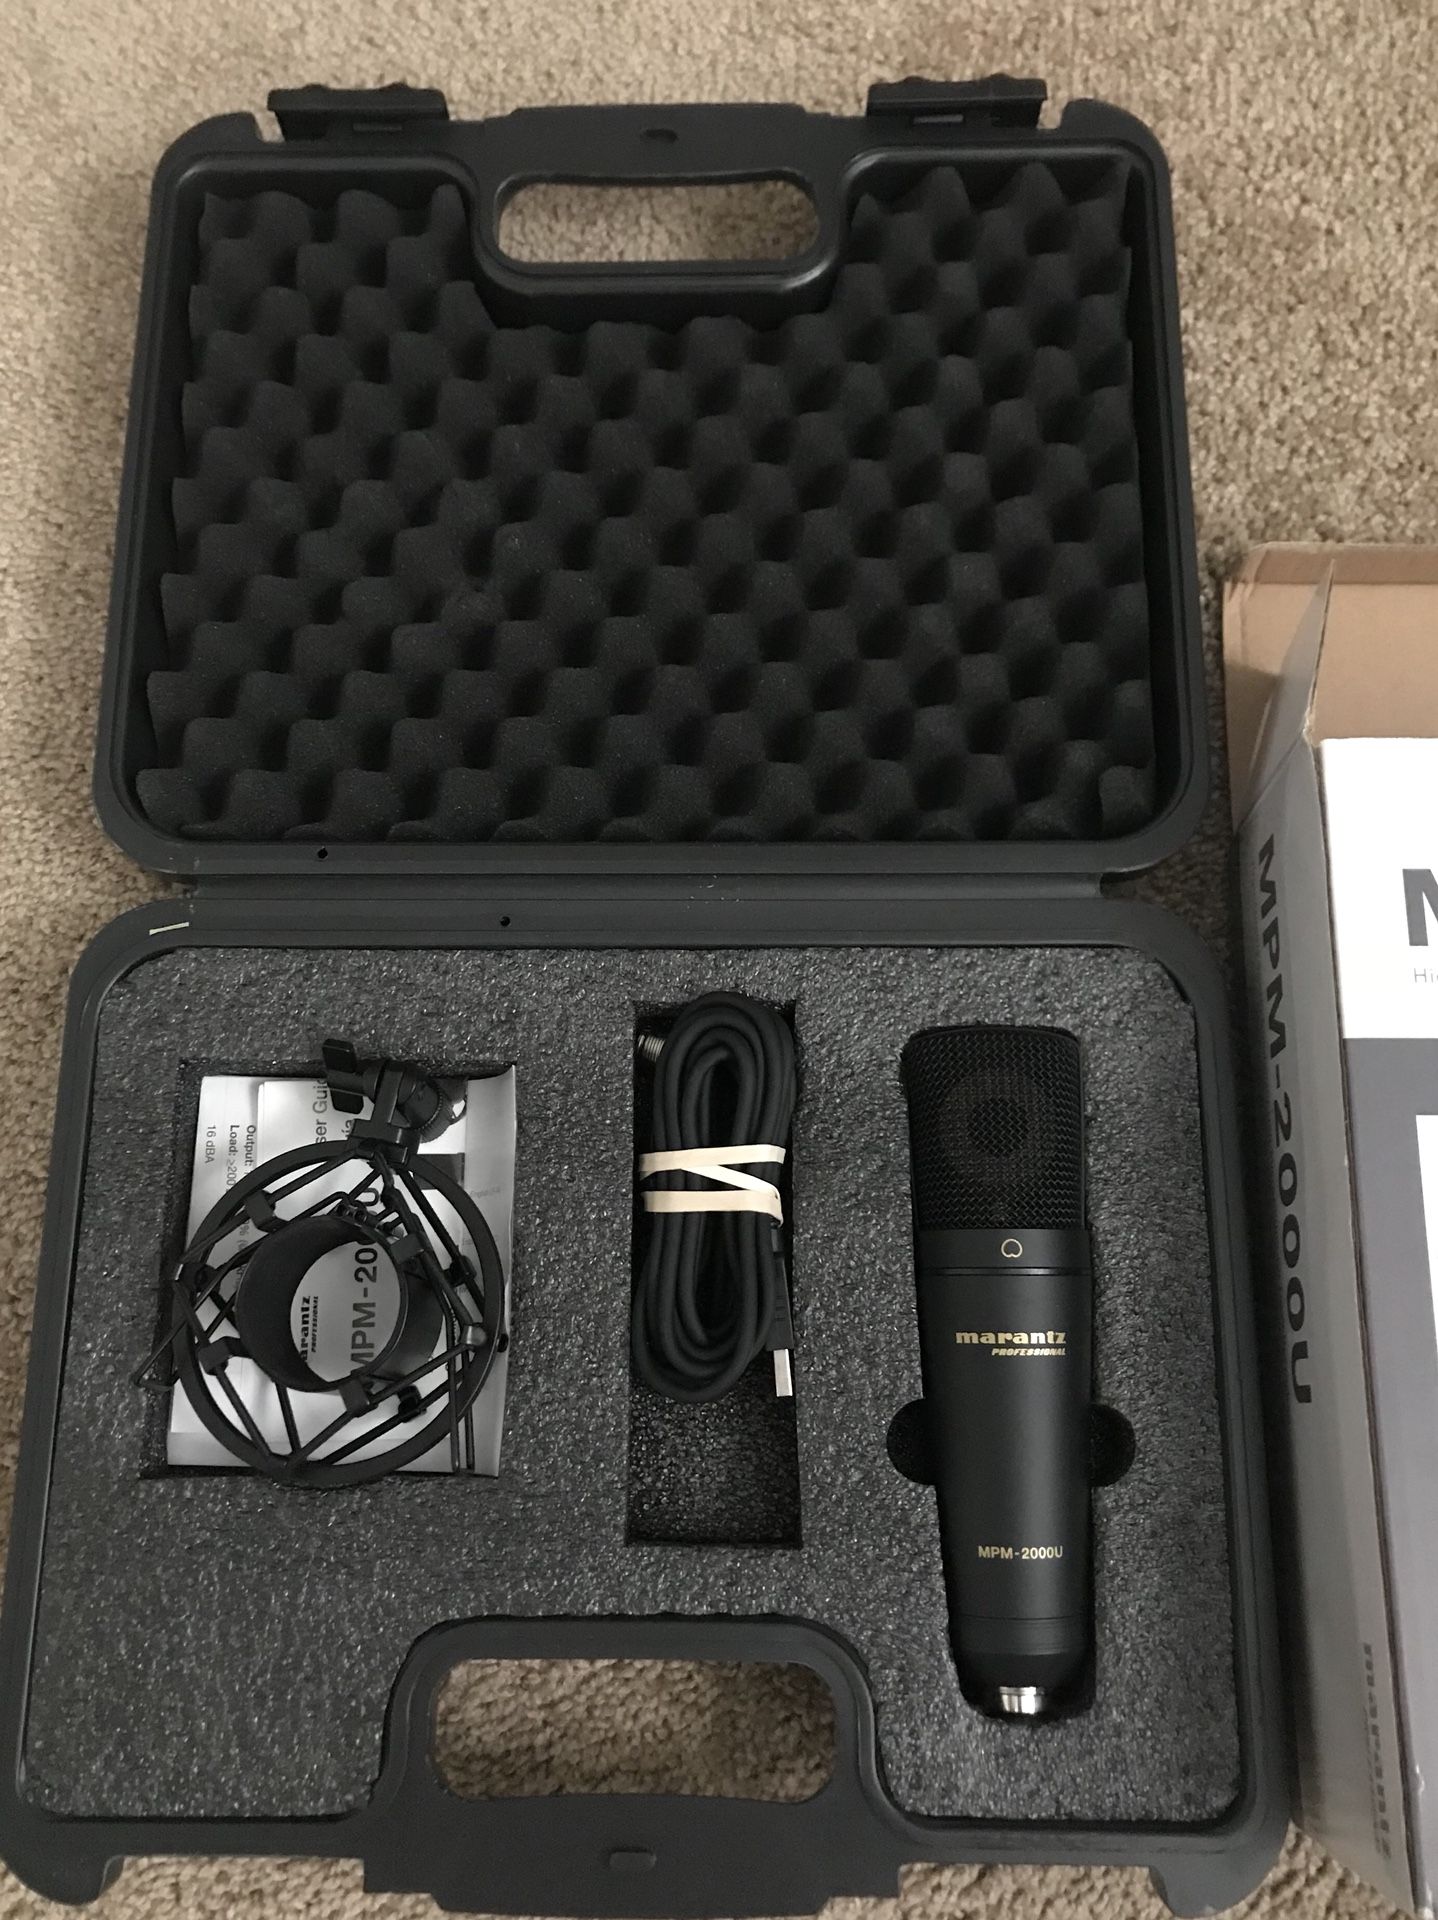 Marantz Professional MPM-2000U condenser USB mic